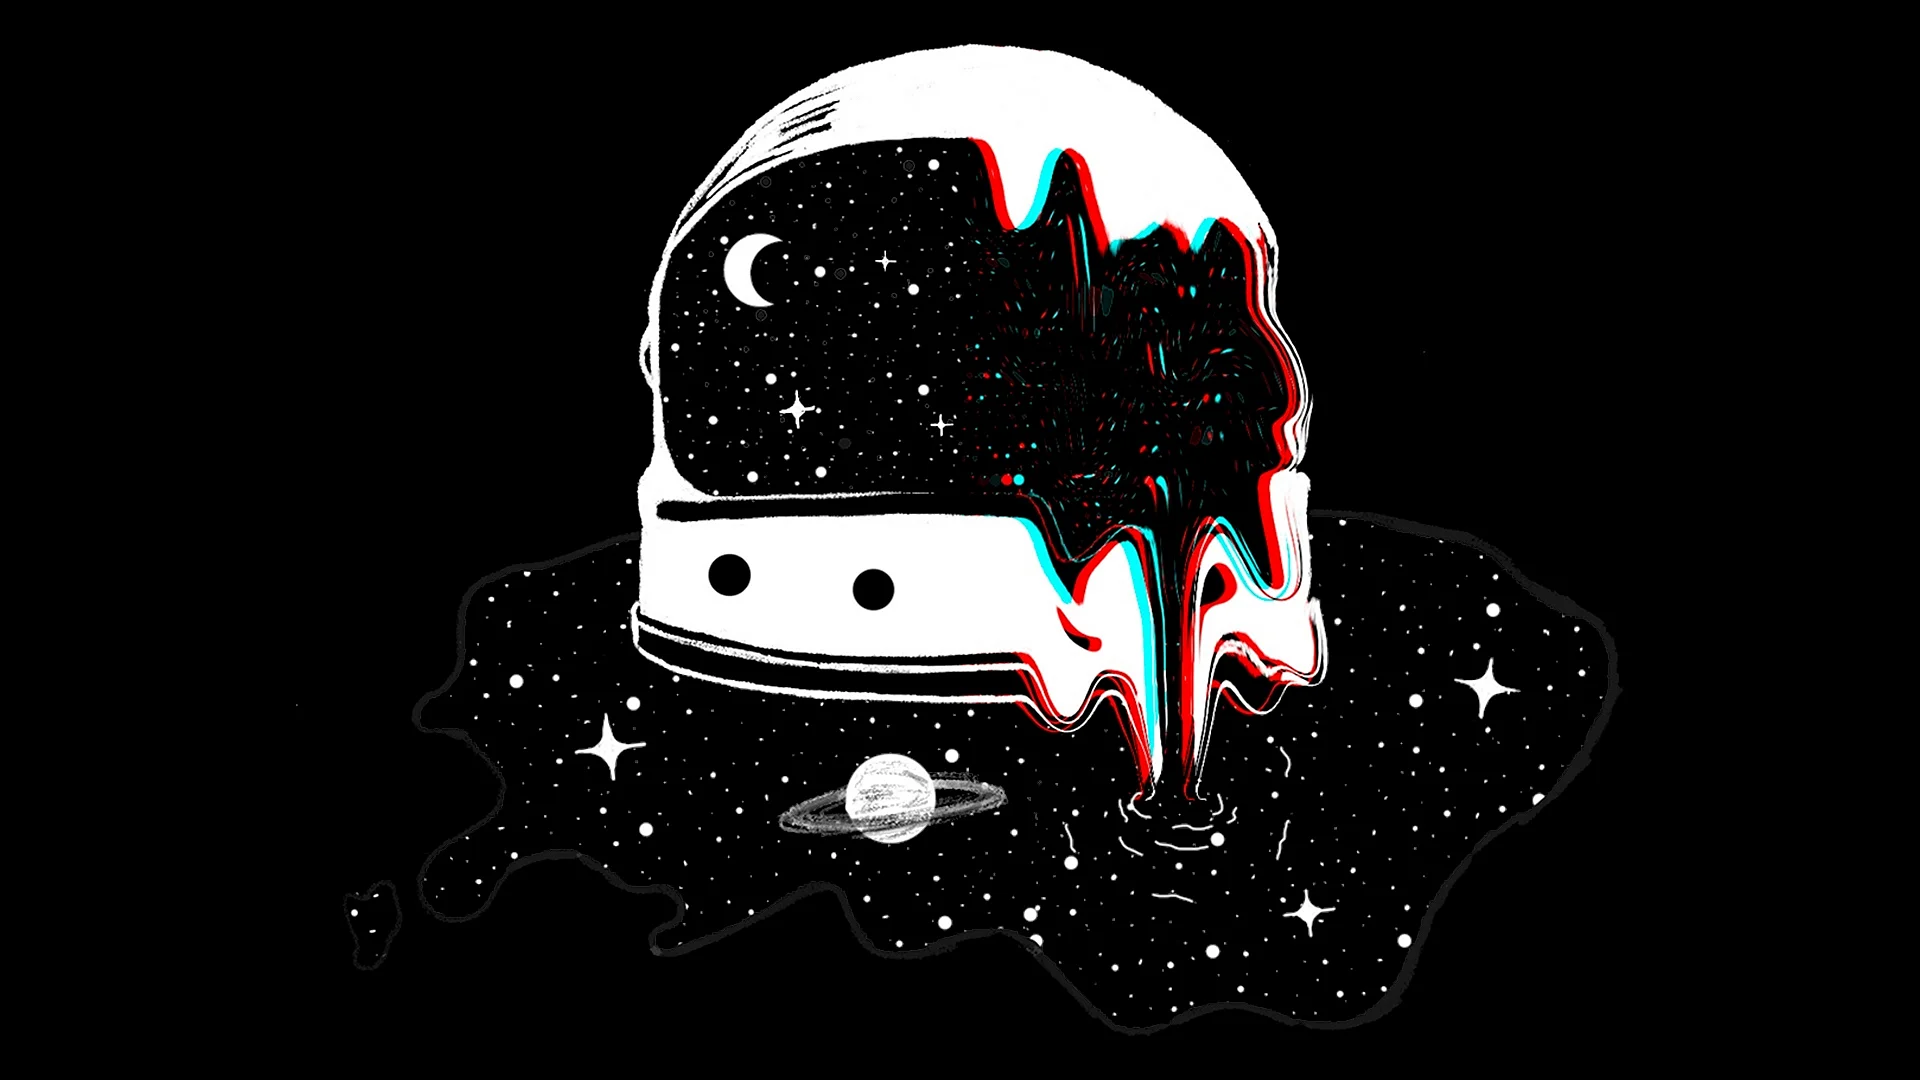 Astronaut Helmet Wallpaper